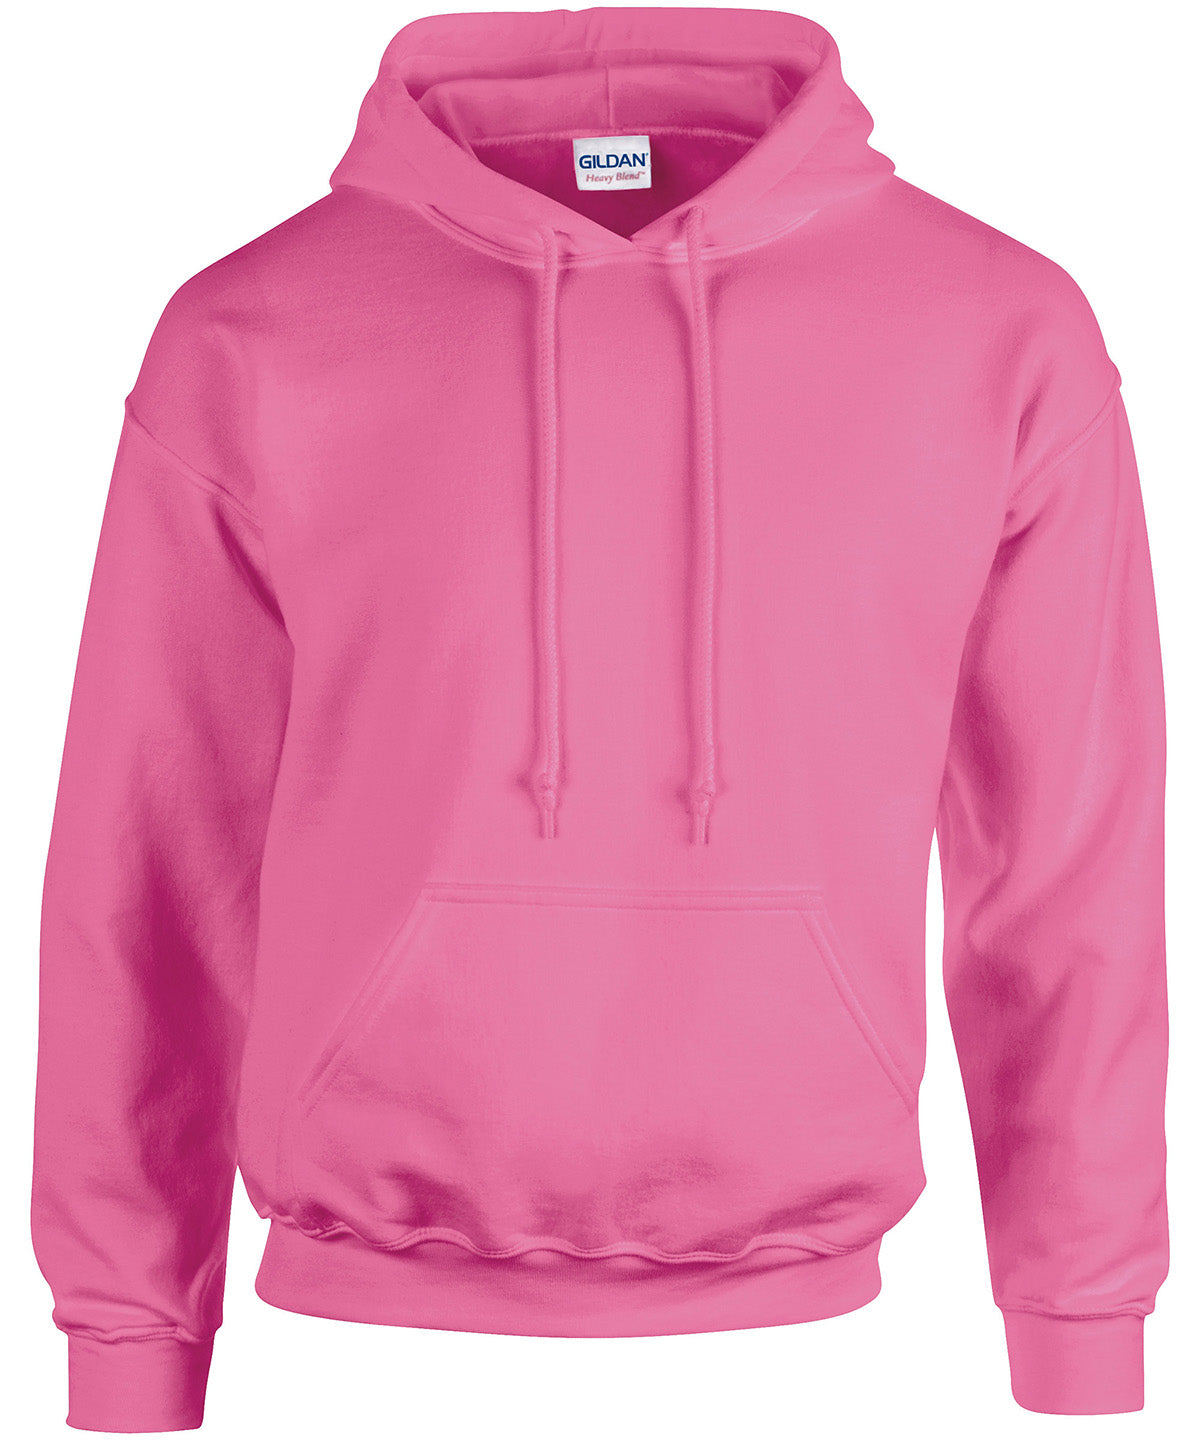 Personalised Hoodies - Light Pink Gildan Heavy Blend™ hooded sweatshirt